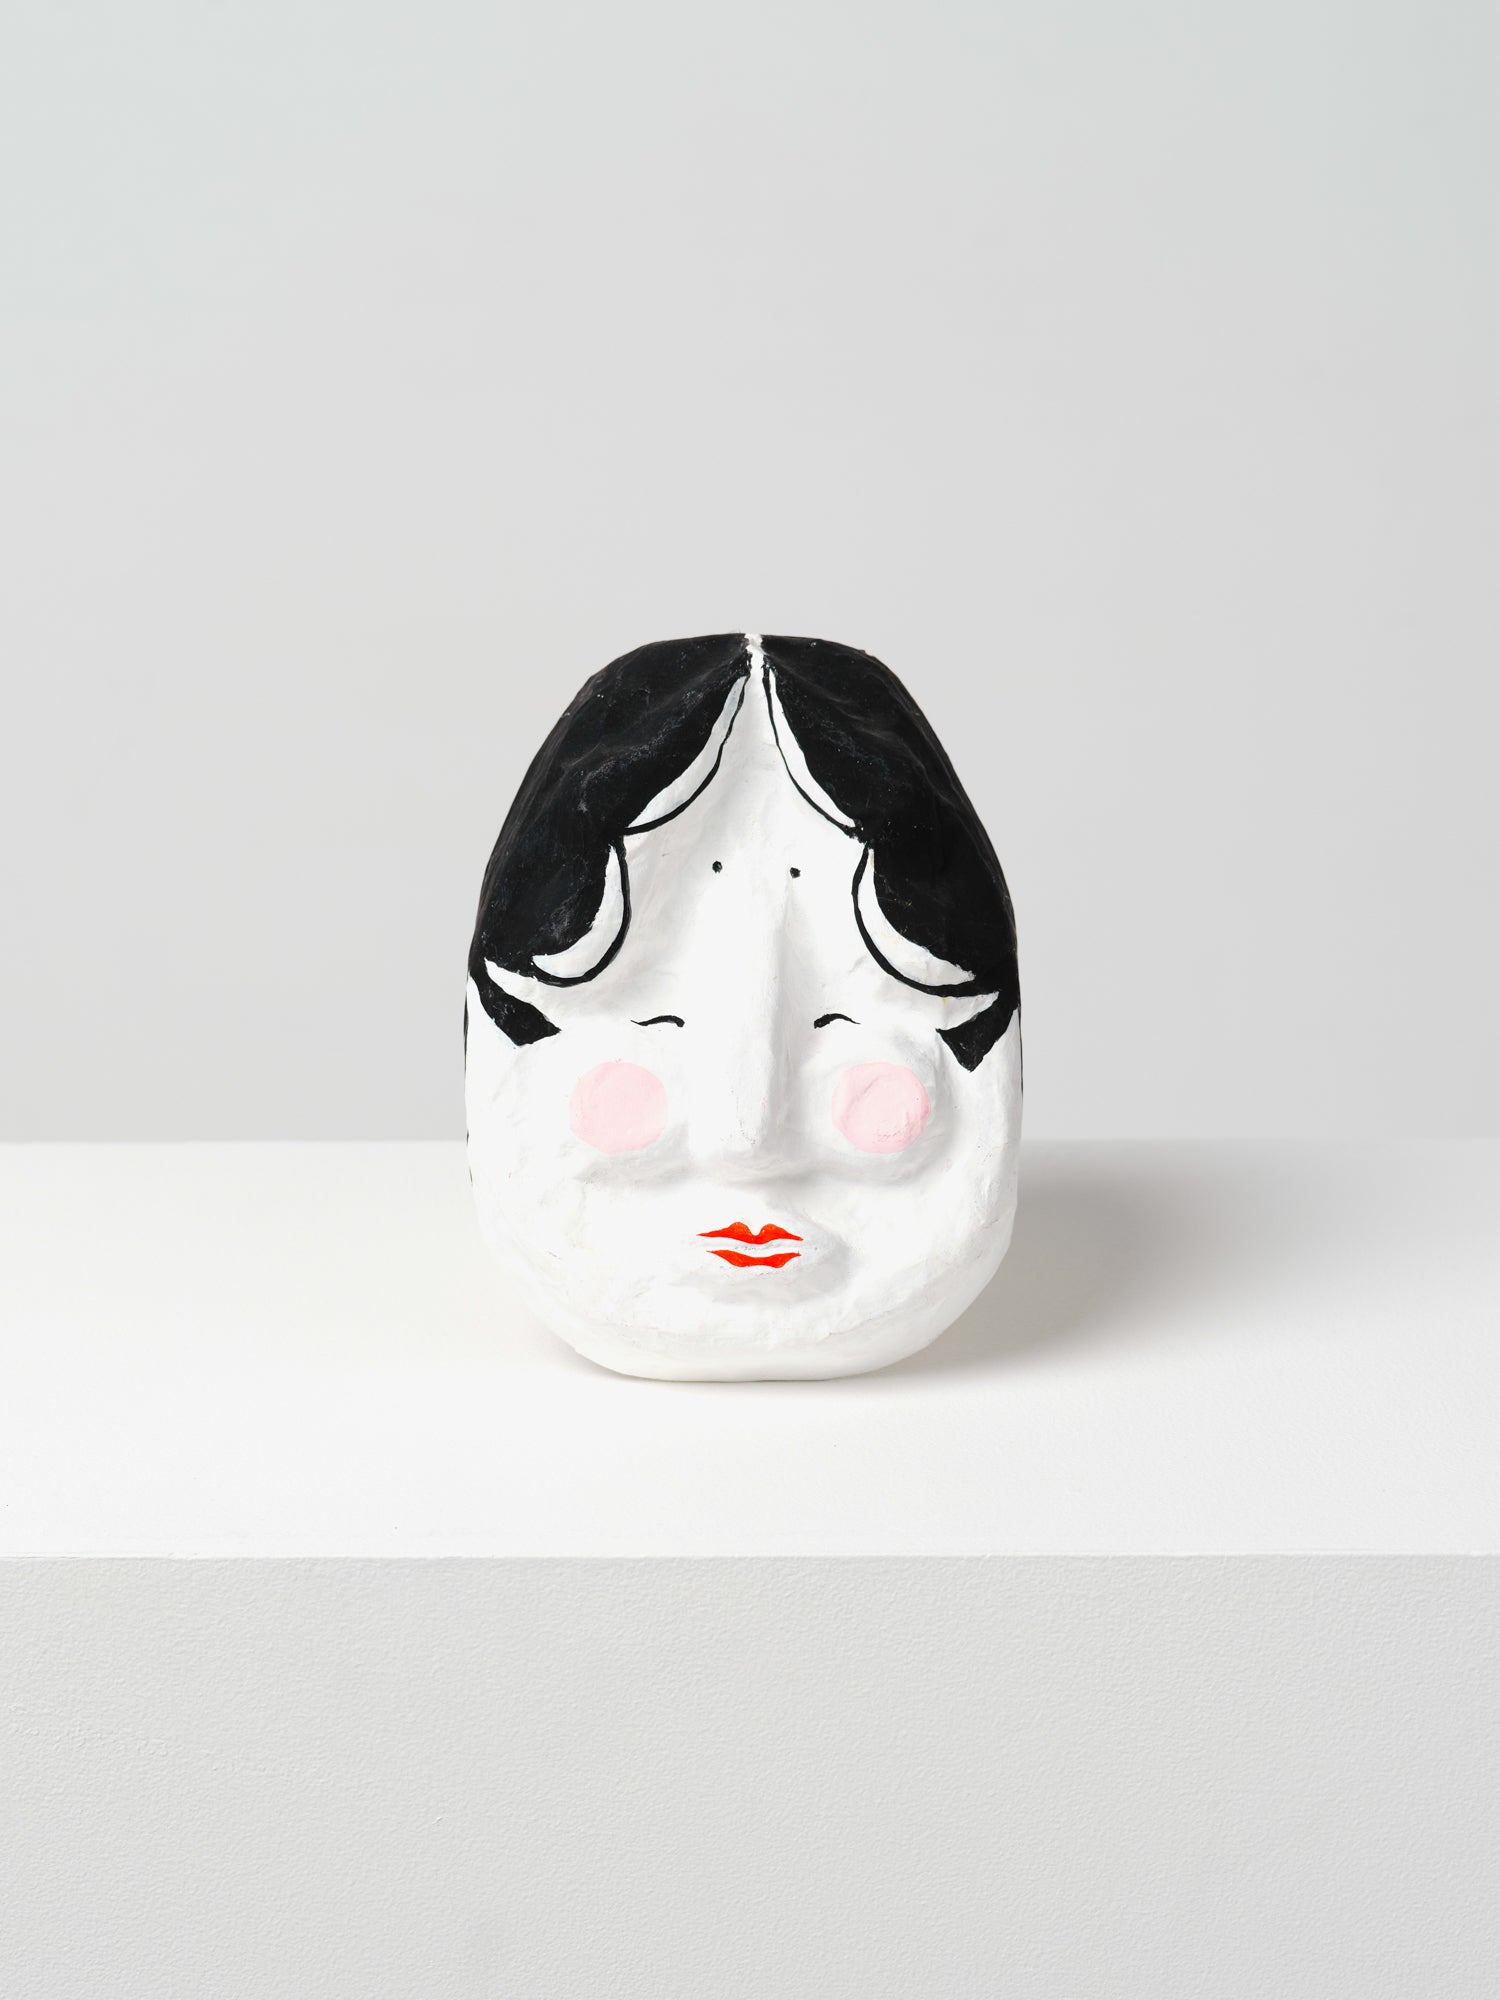 Hariko (papier-maché) masks made by Furukawa in Kyoto